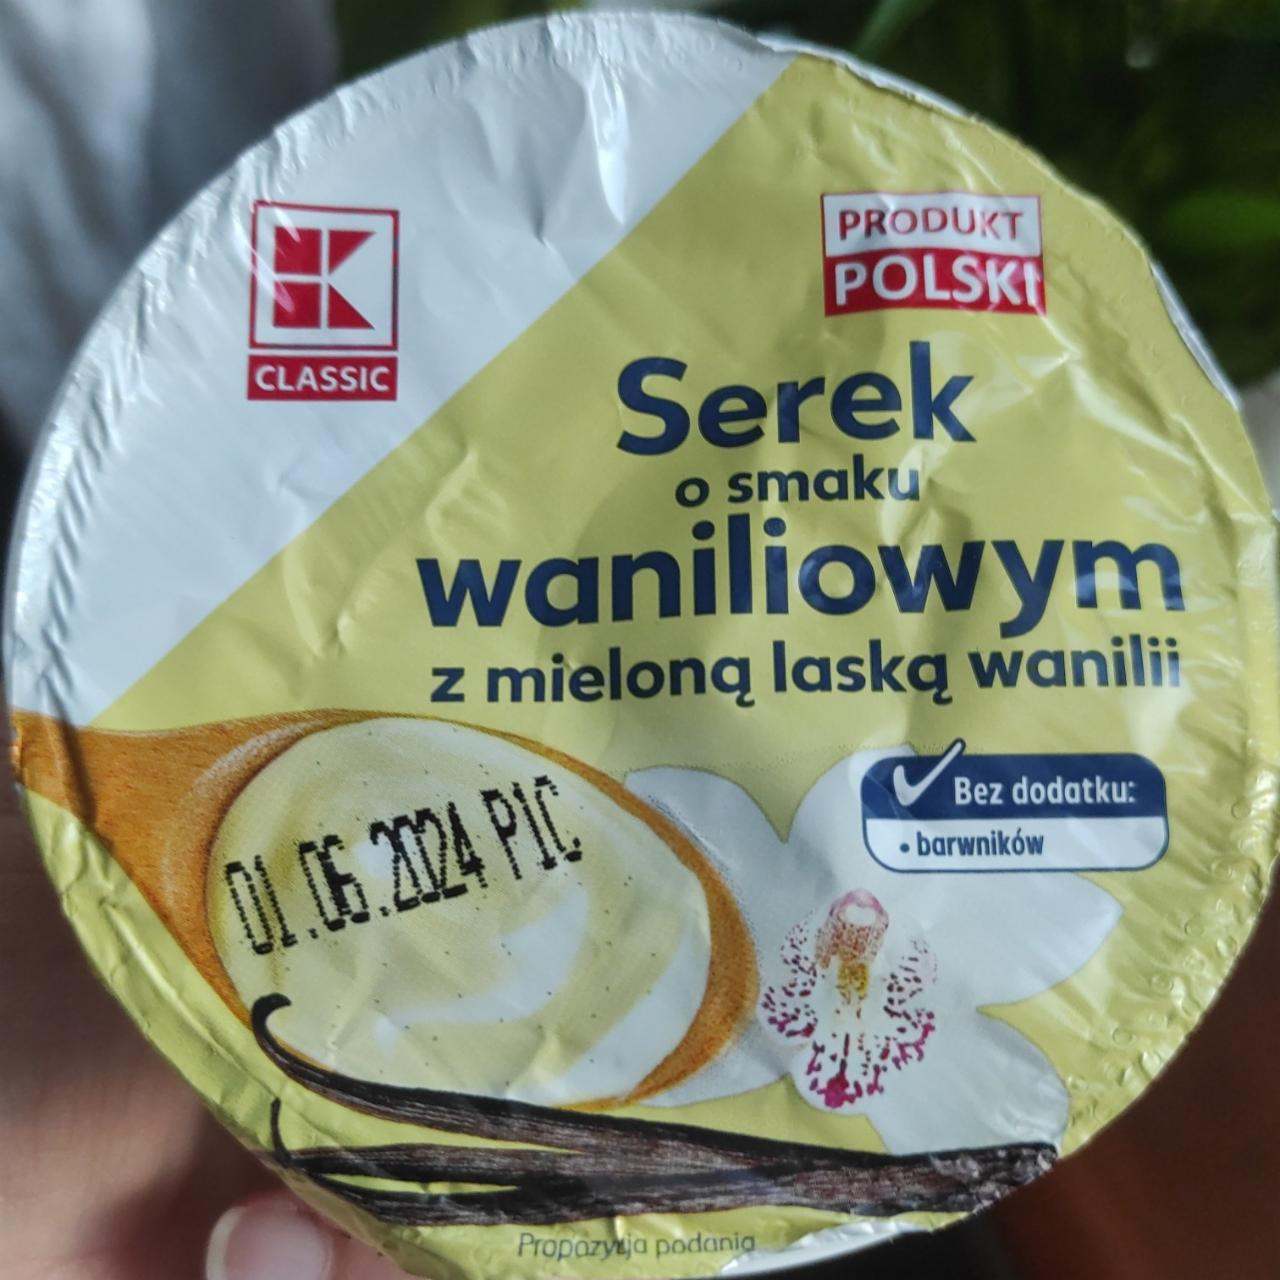 Фото - Serek o smaku waniliowym z mieloną łaską wanilii K-Classic